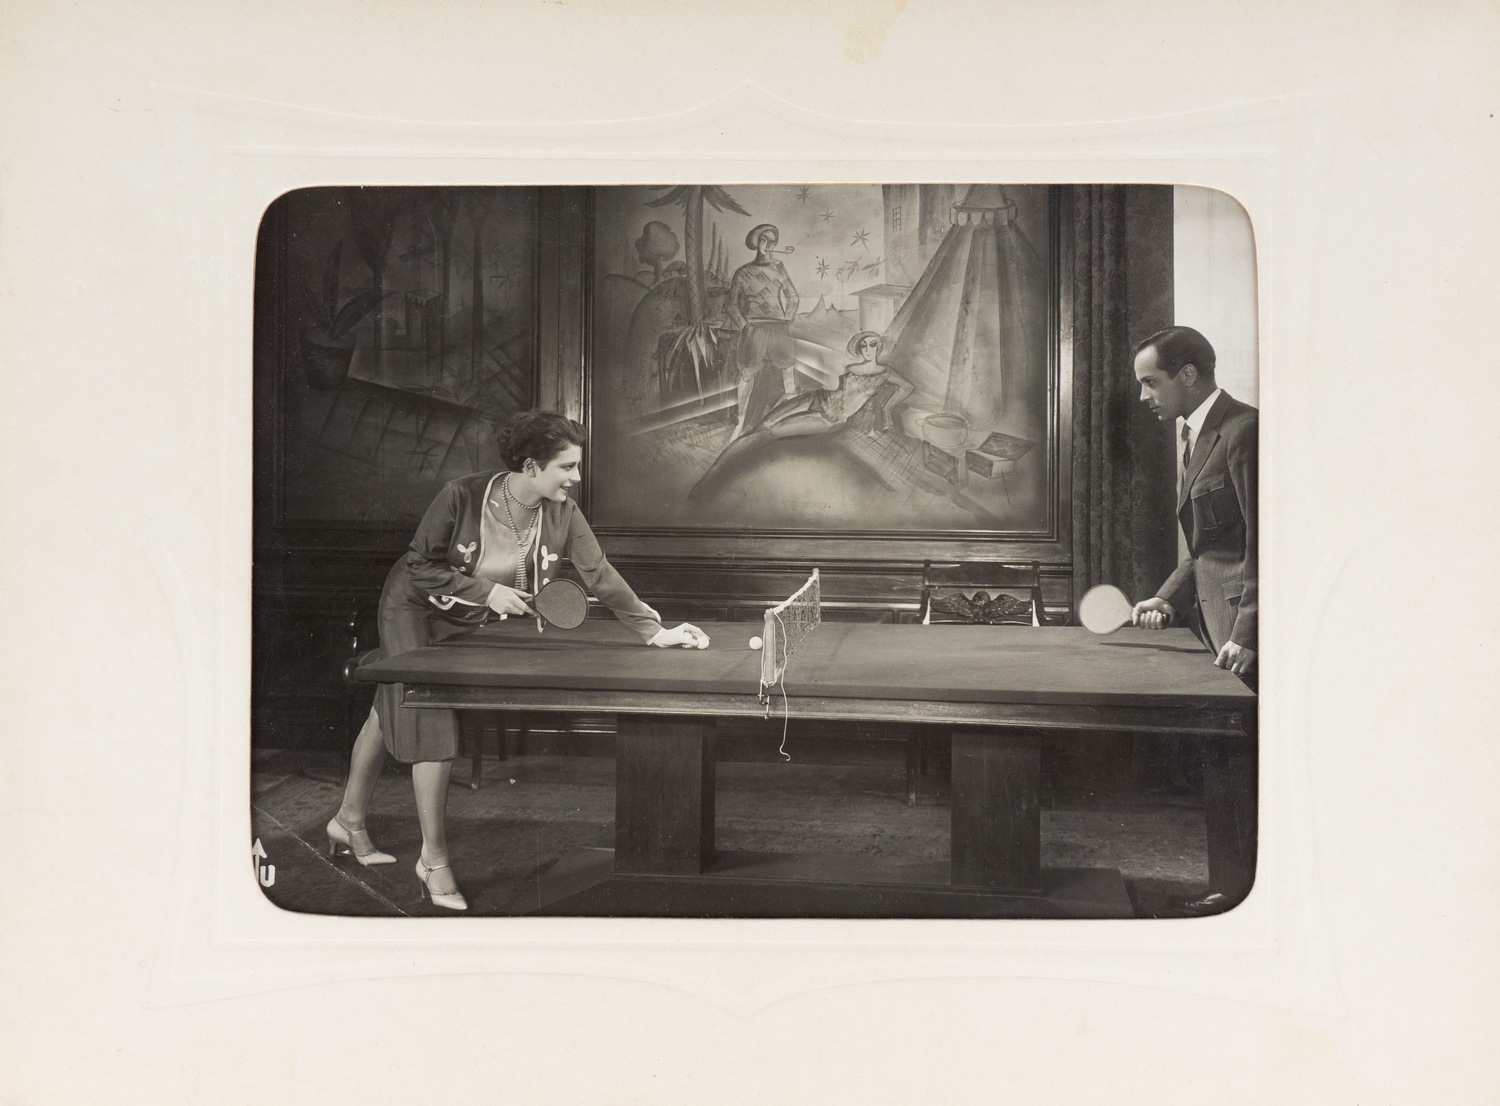 Фотография «Настольный теннис». Зап. Европа, 1930-е годы.